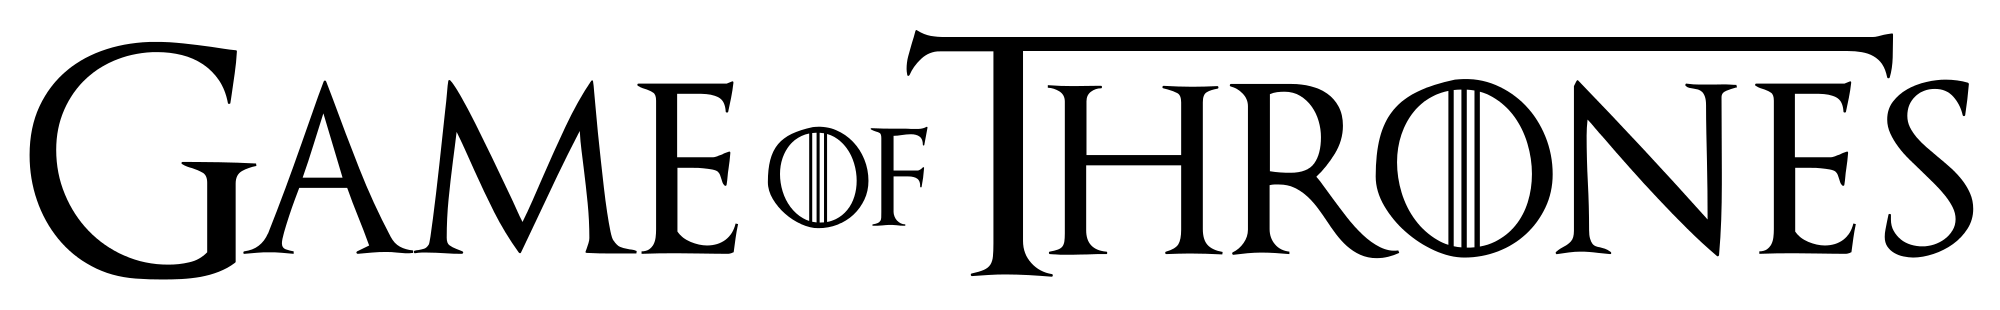 Jeu de trônes logo PNG image haute qualité image